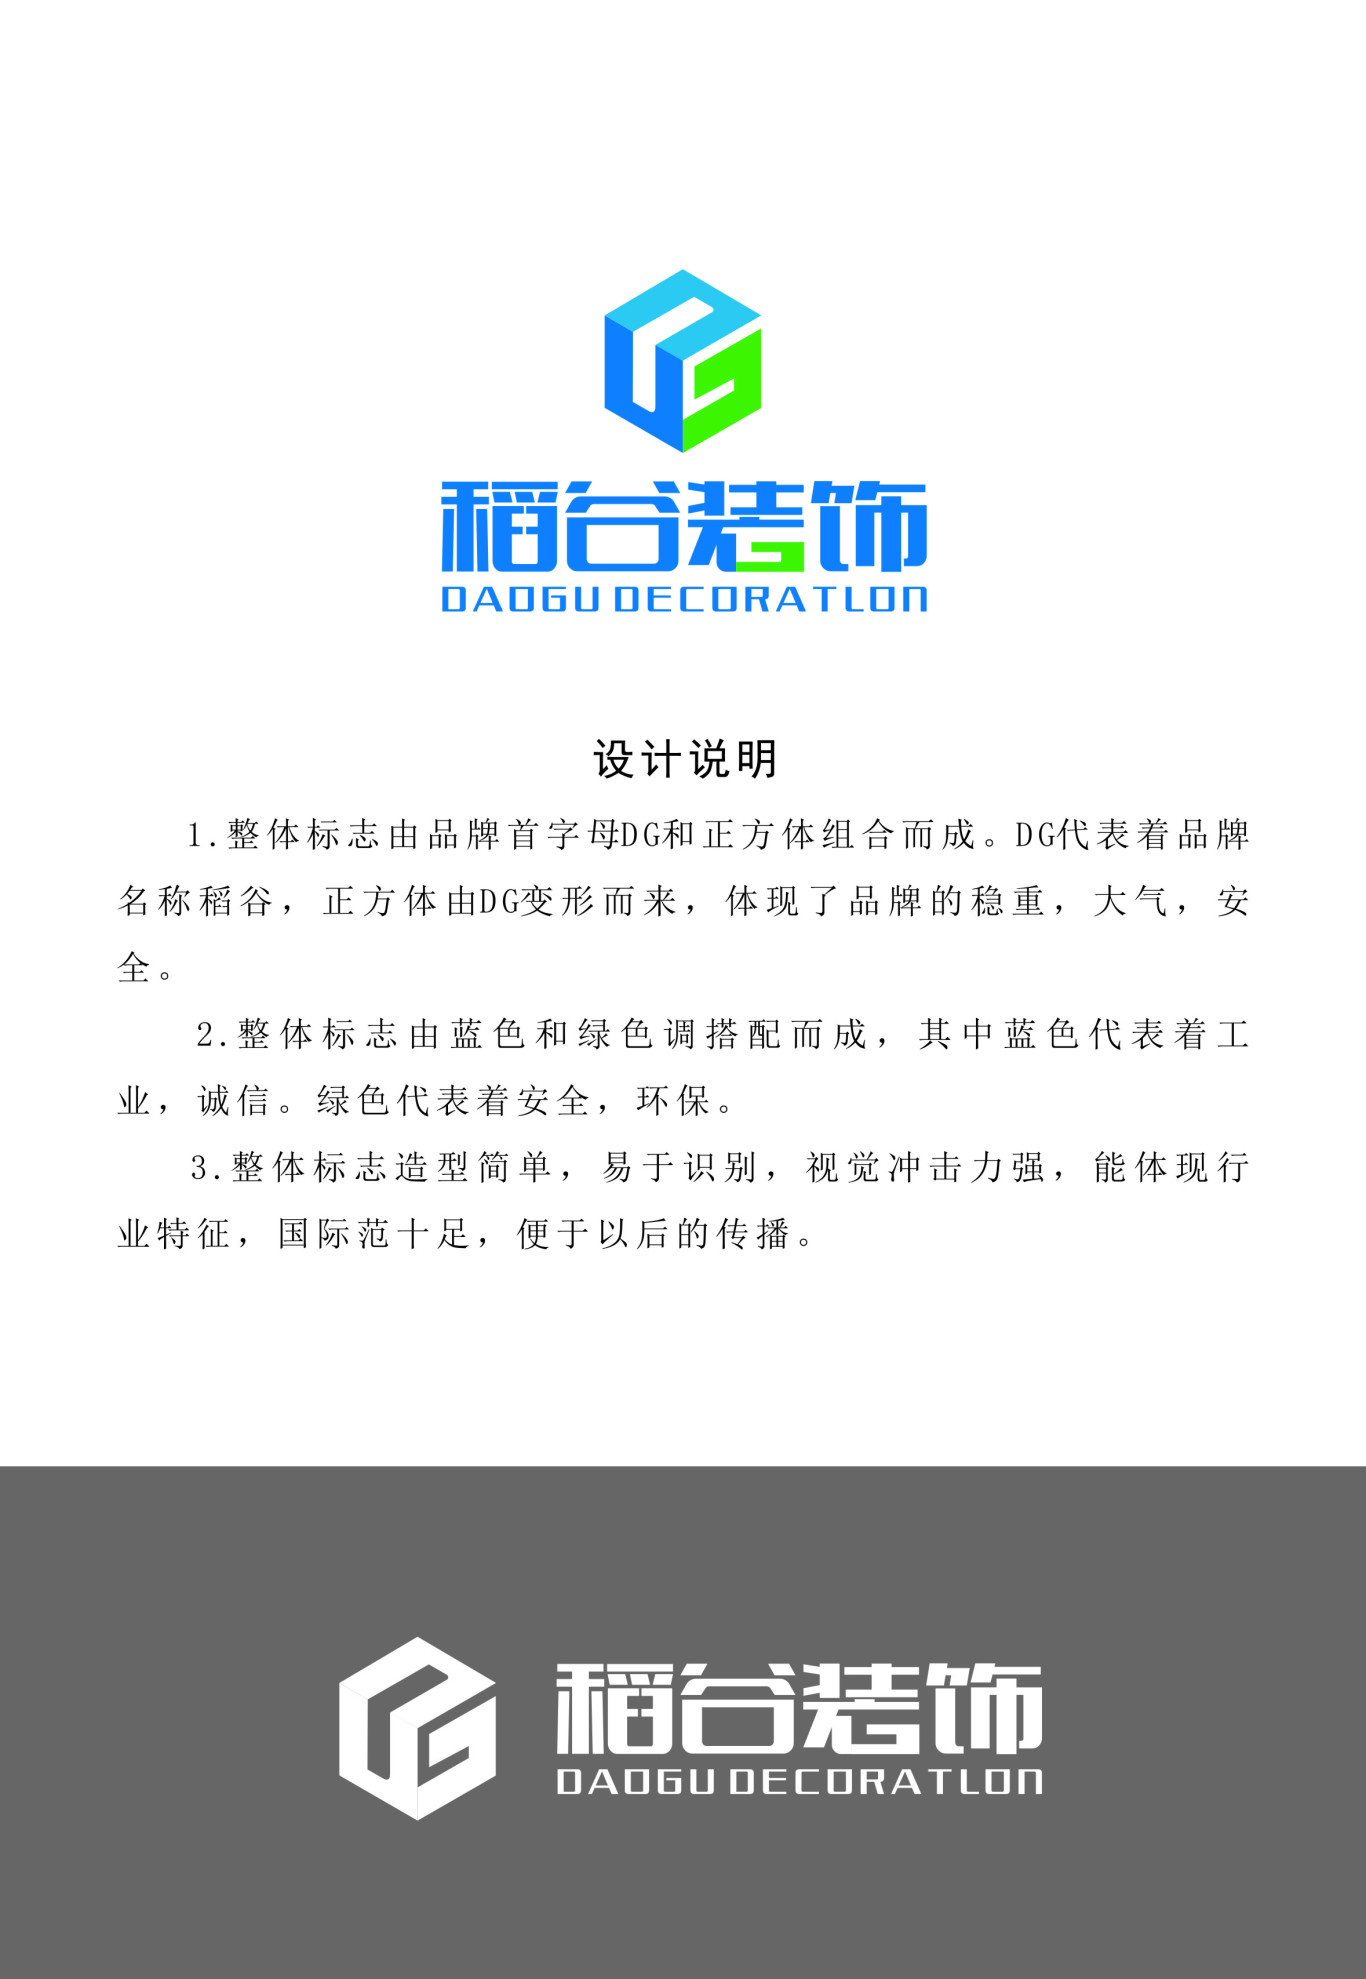 深圳市稻谷装饰设计工程有限公司logo设计图1